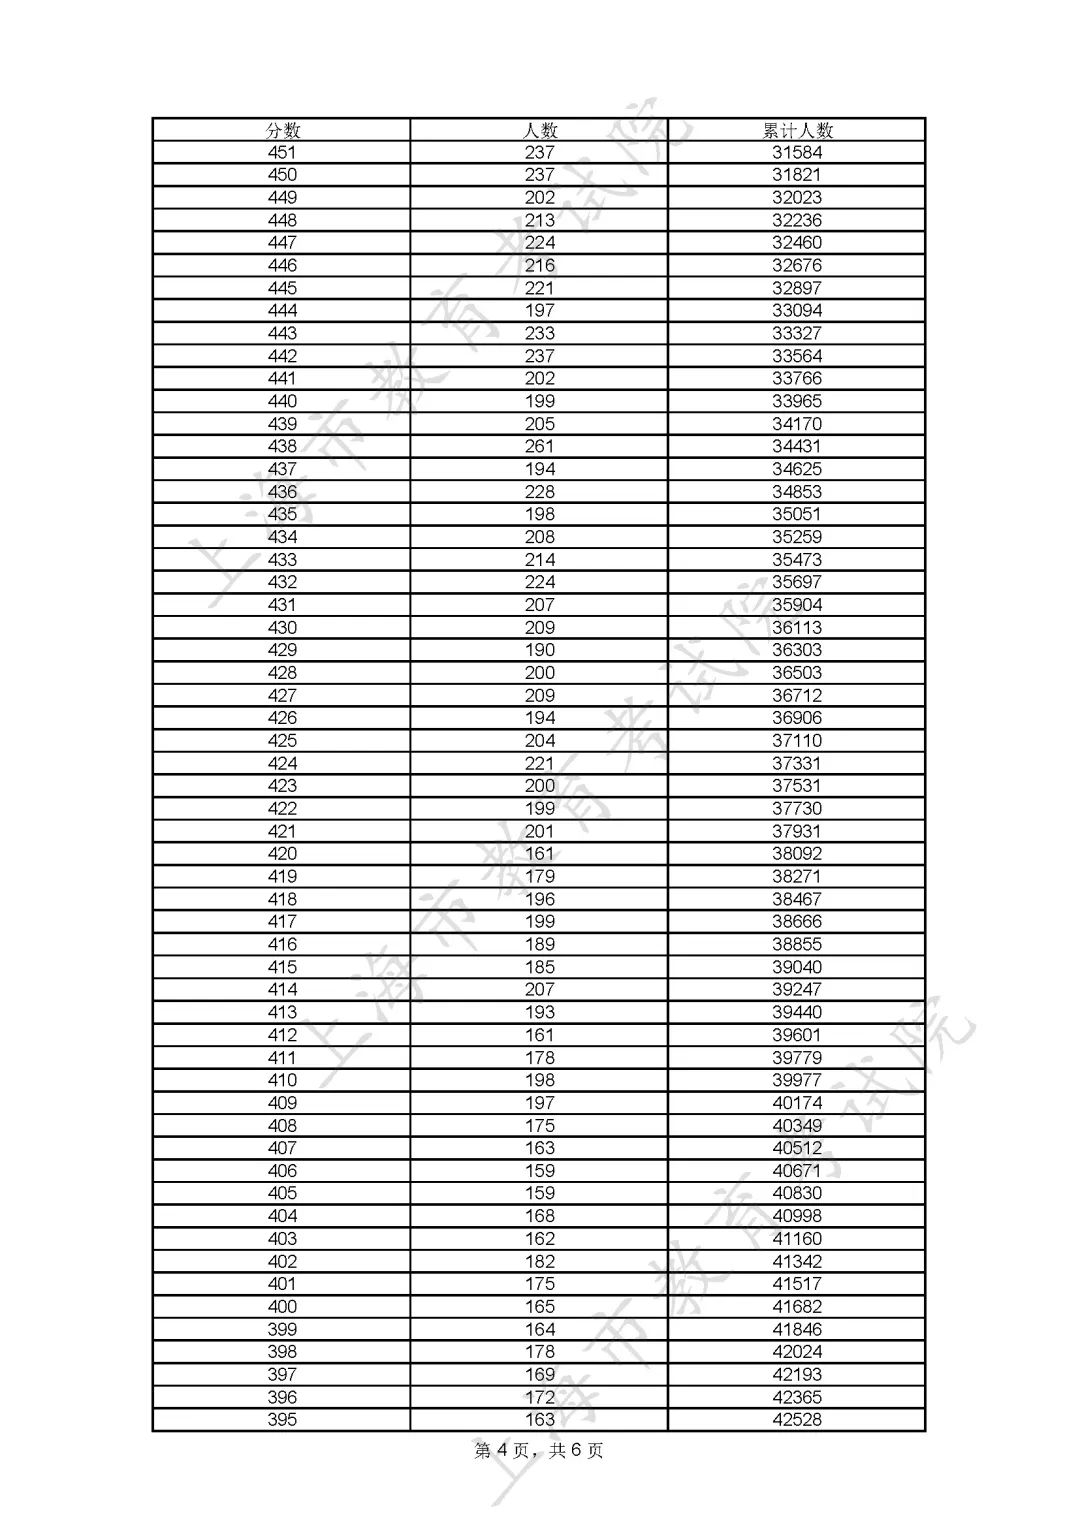 2023上海高考一分一段表公布 分数位次排名【综合】